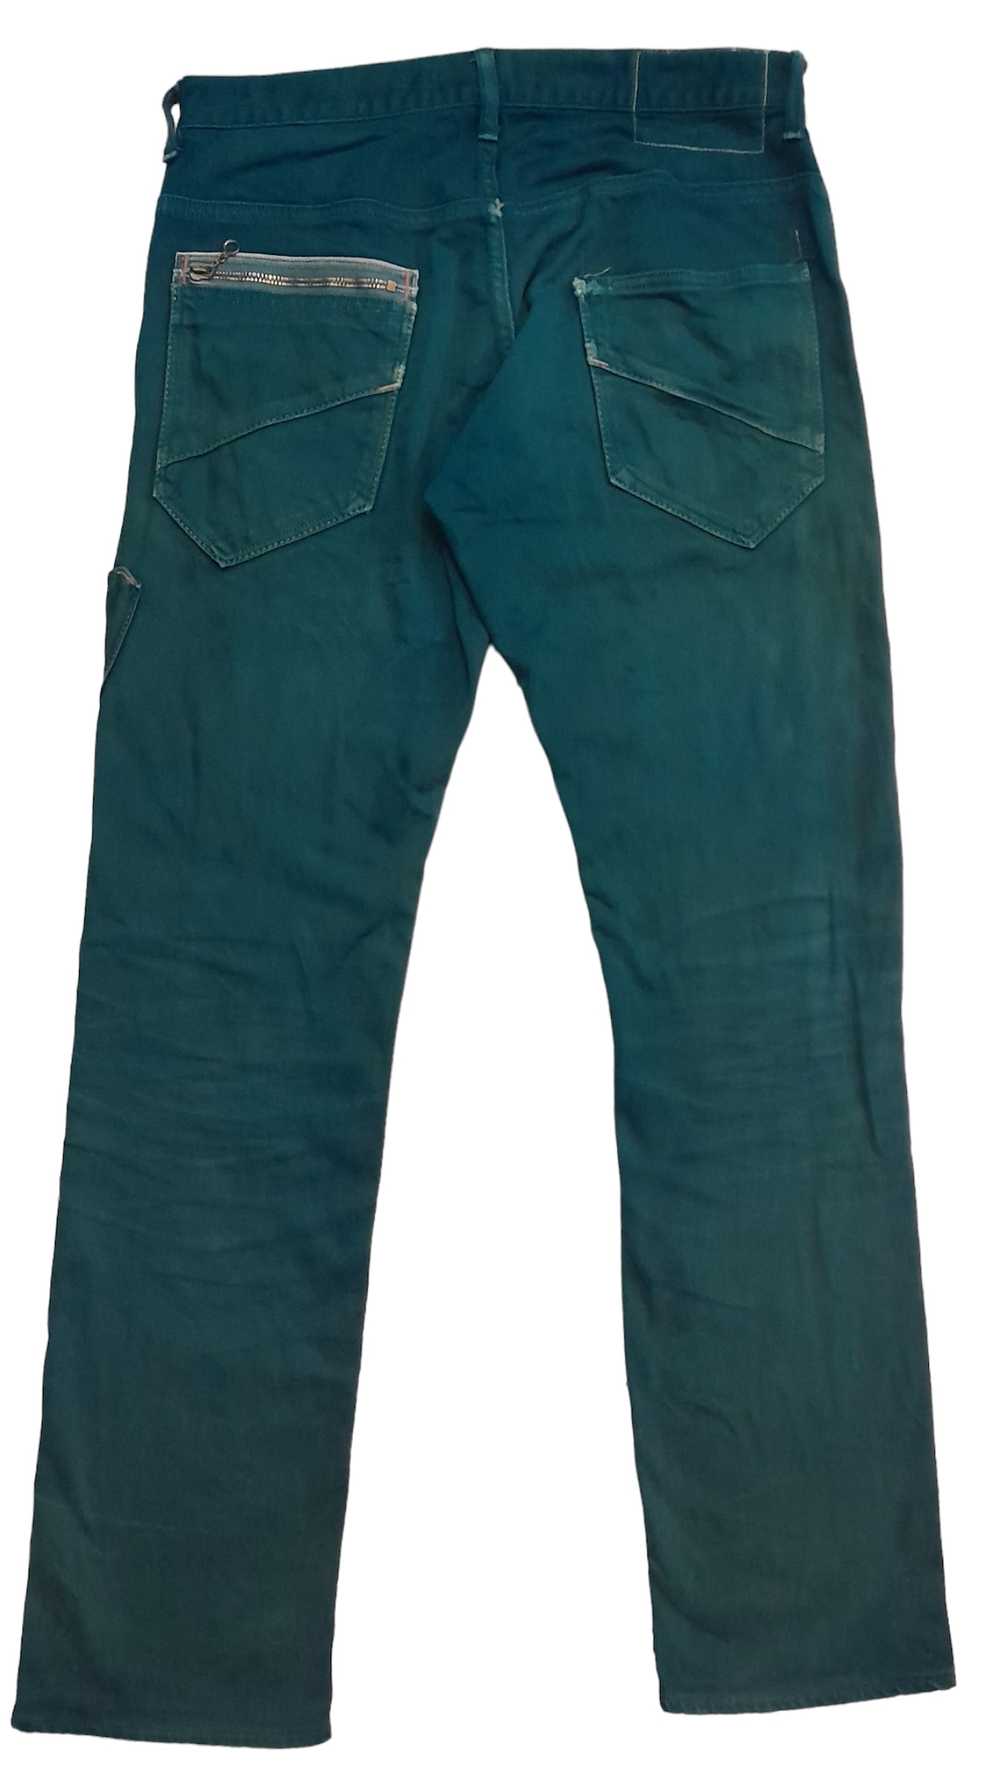 John Bull Johnbull casual pants (S8) - image 1